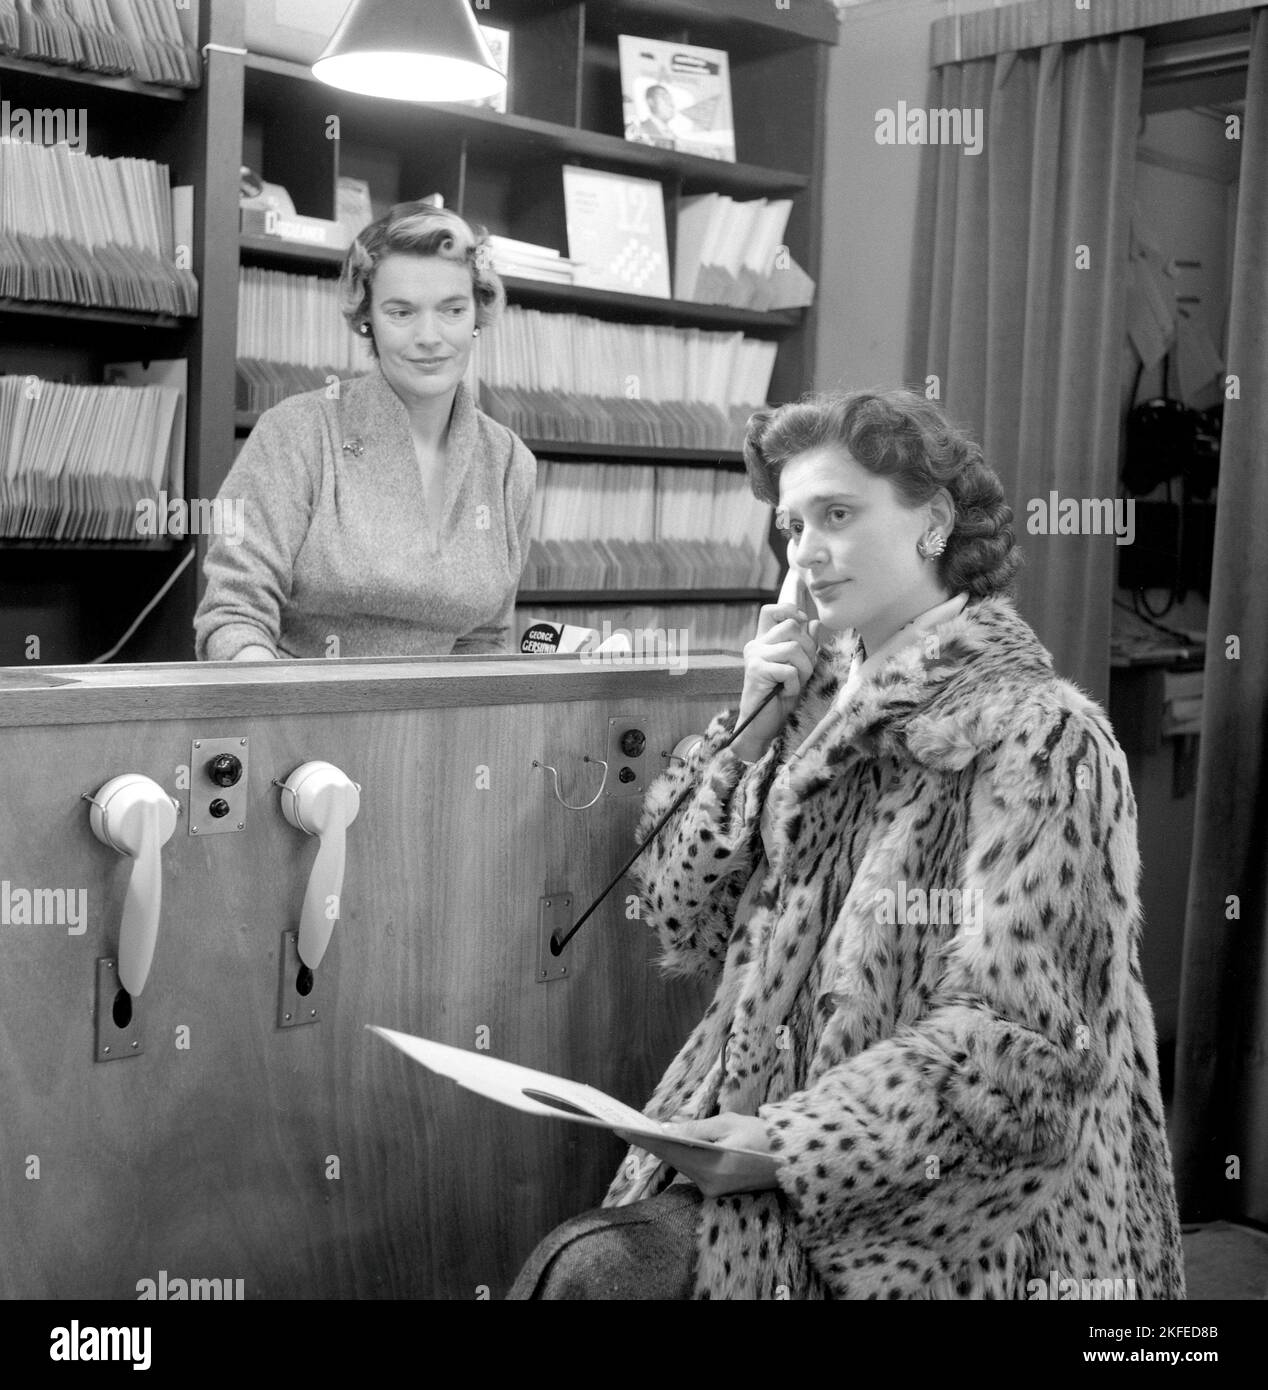 Comment vous avez acheté des disques dans le 1950s. La dame tenant ce qui ressemble à un téléphone écoute en fait un enregistrement. À ce moment-là, il était courant que les clients puissent écouter les dossiers avant de décider des acheter. Le magasin de disques dispose de plusieurs stations d'écoute et d'une femme derrière le comptoir gérant le système. Elle détient un disque portant le nom de George Gershwin. Suède 1950s. Banque D'Images